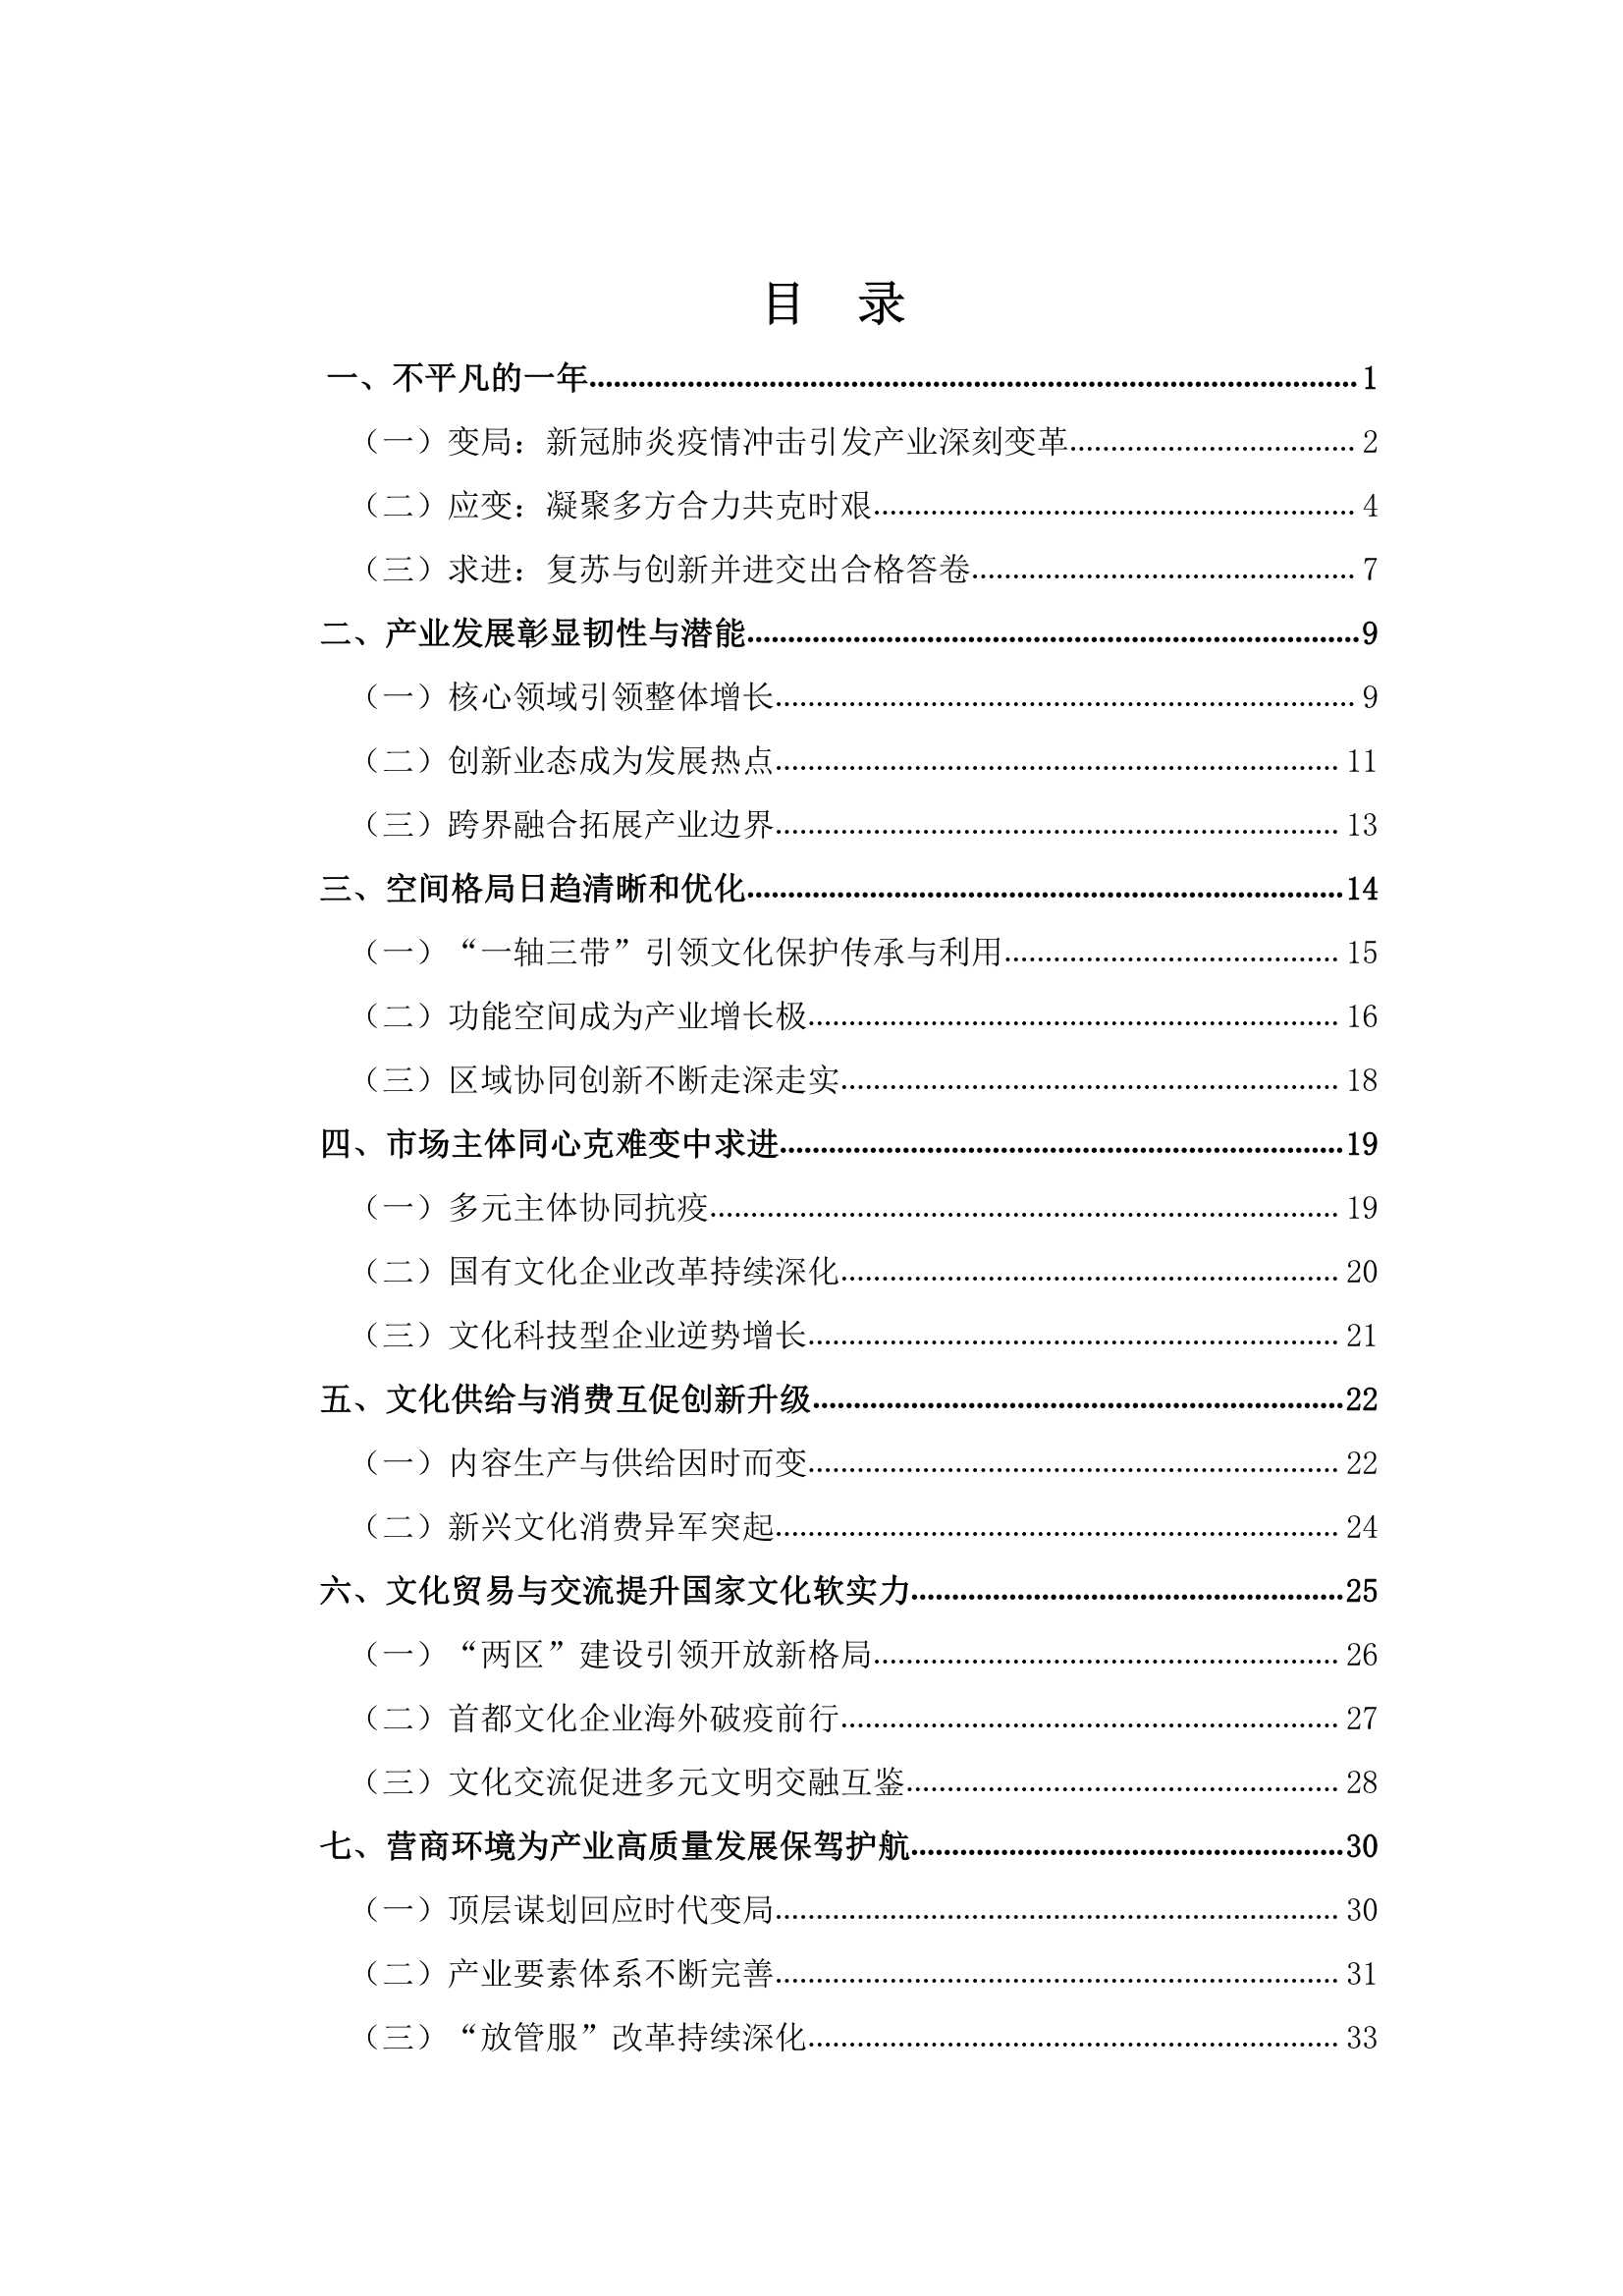 中国传媒大学-北京文化产业发展白皮书-2021.12-46页